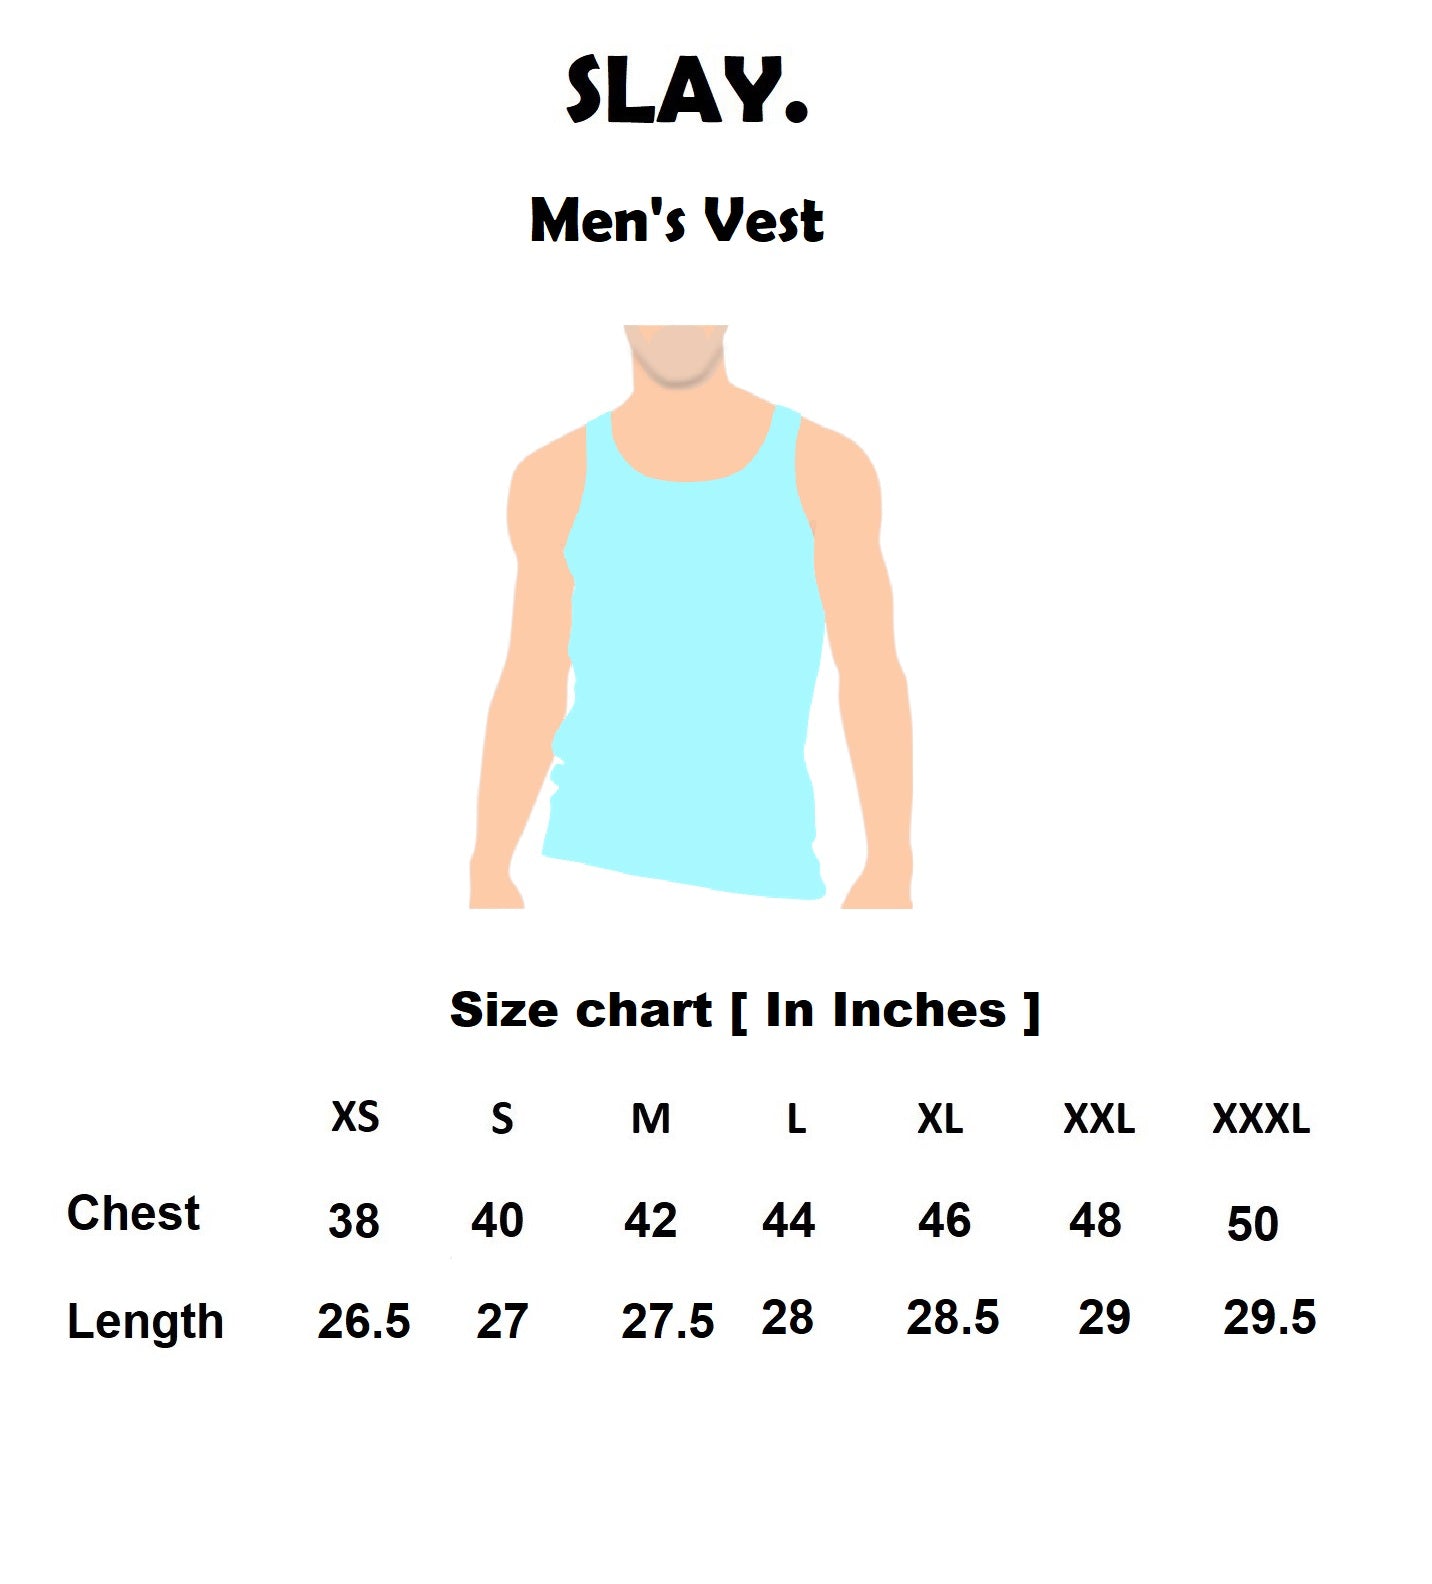 SLAY. Classic Men's Printed White Gym Vest-clothing-to-slay.myshopify.com-Vest